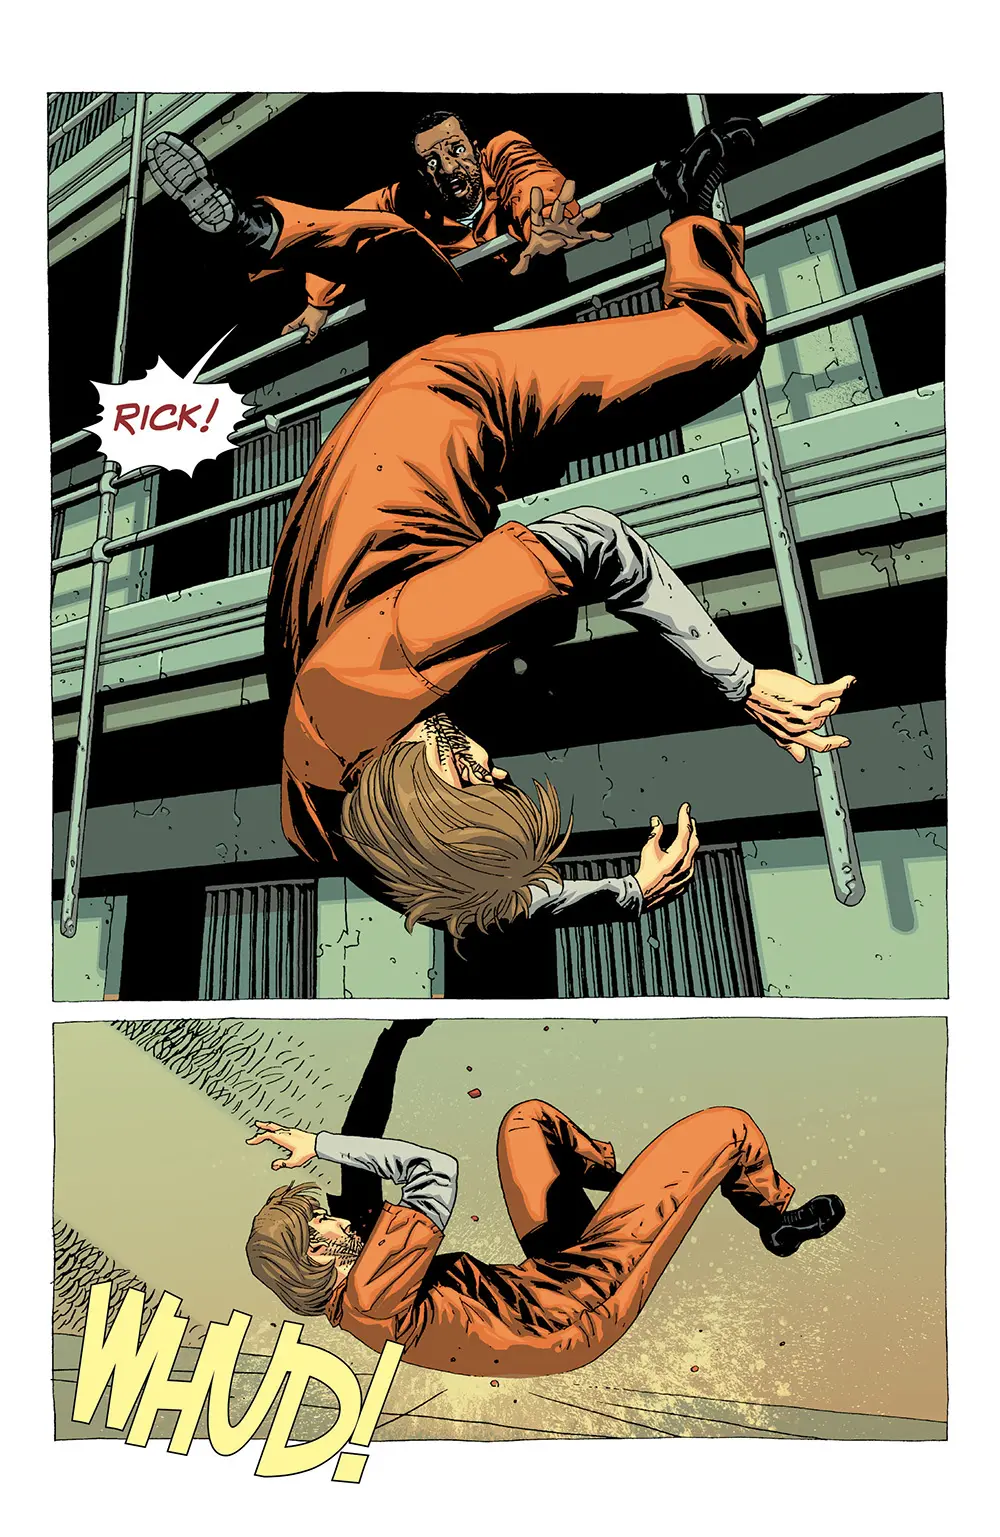 Rick caindo enquanto Tyreese fica desesperado achando que pode ter o matado na edição 23 da The Walking Dead Deluxe.